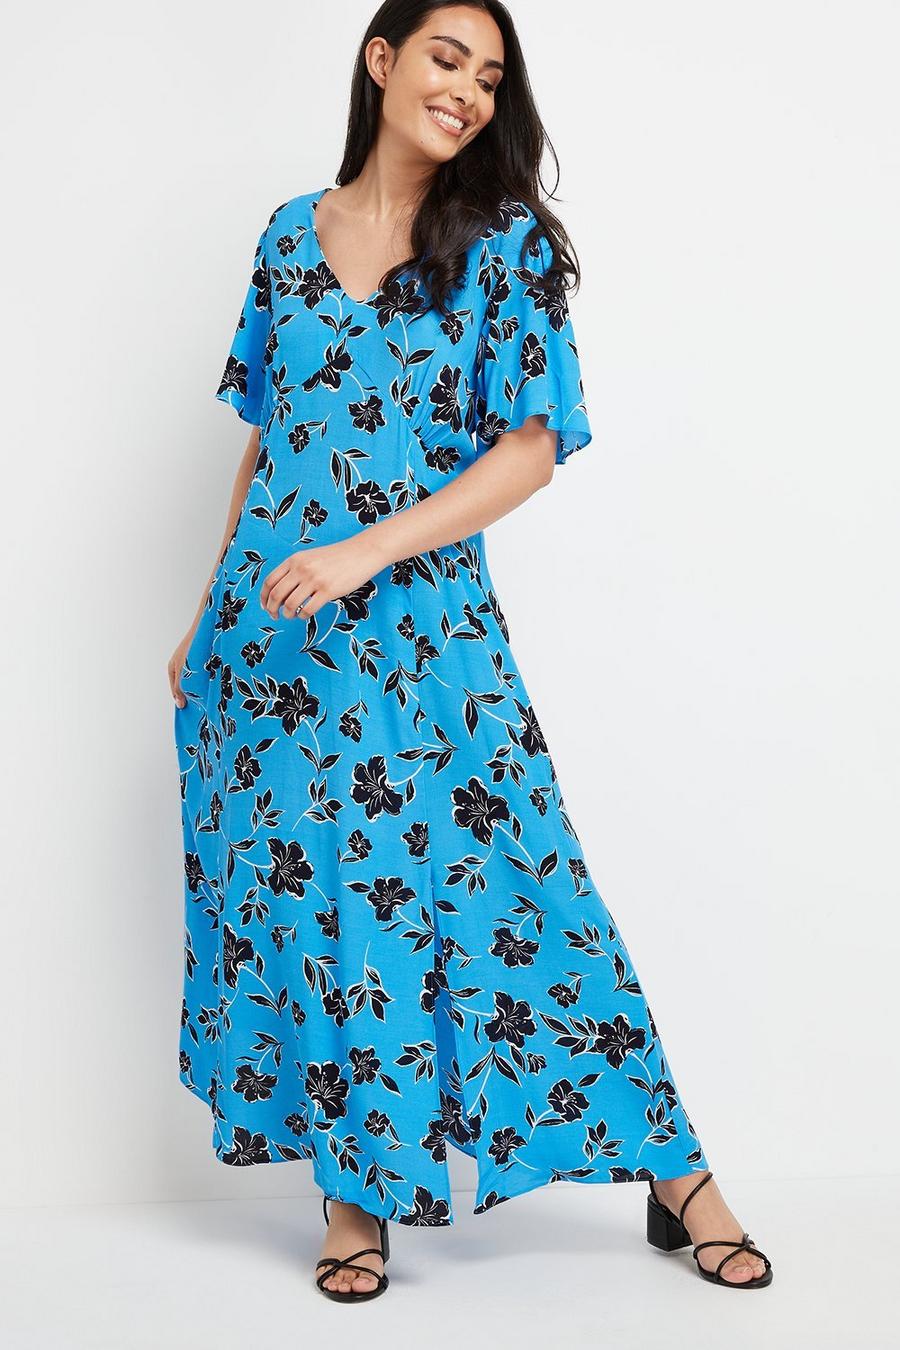 Petite Blue Floral Maxi Dress